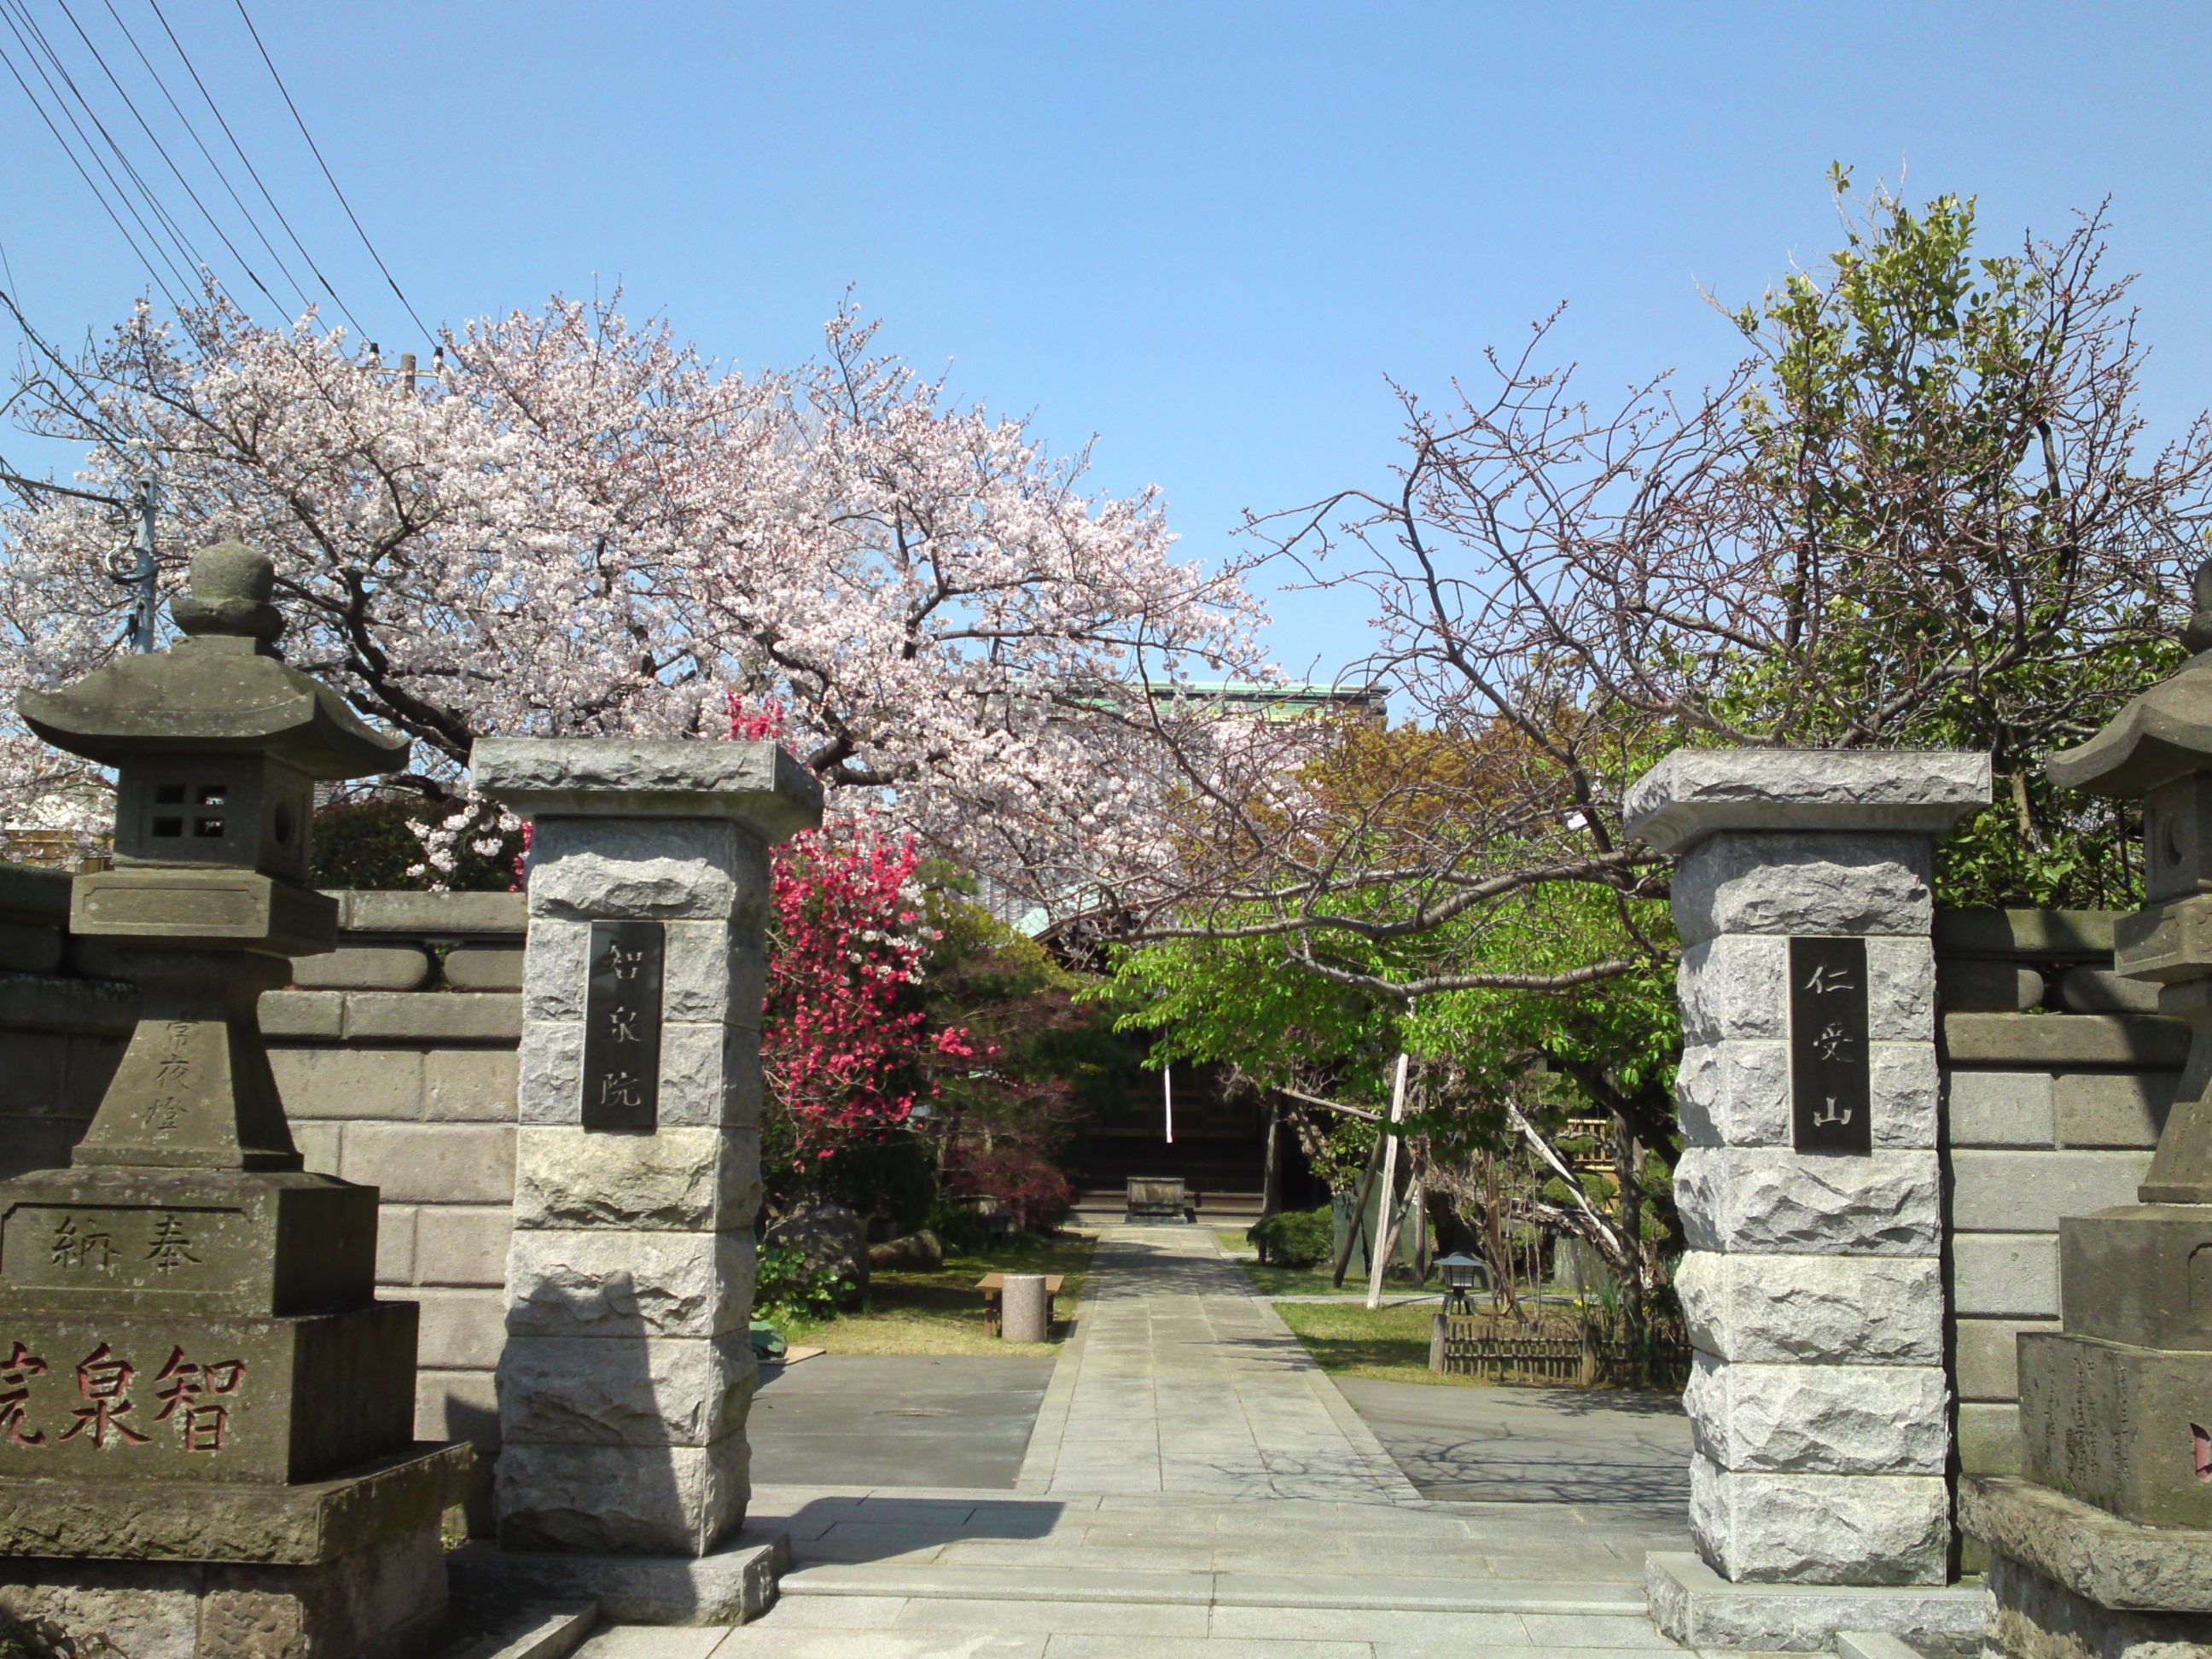 智泉院境内に咲く桜の花